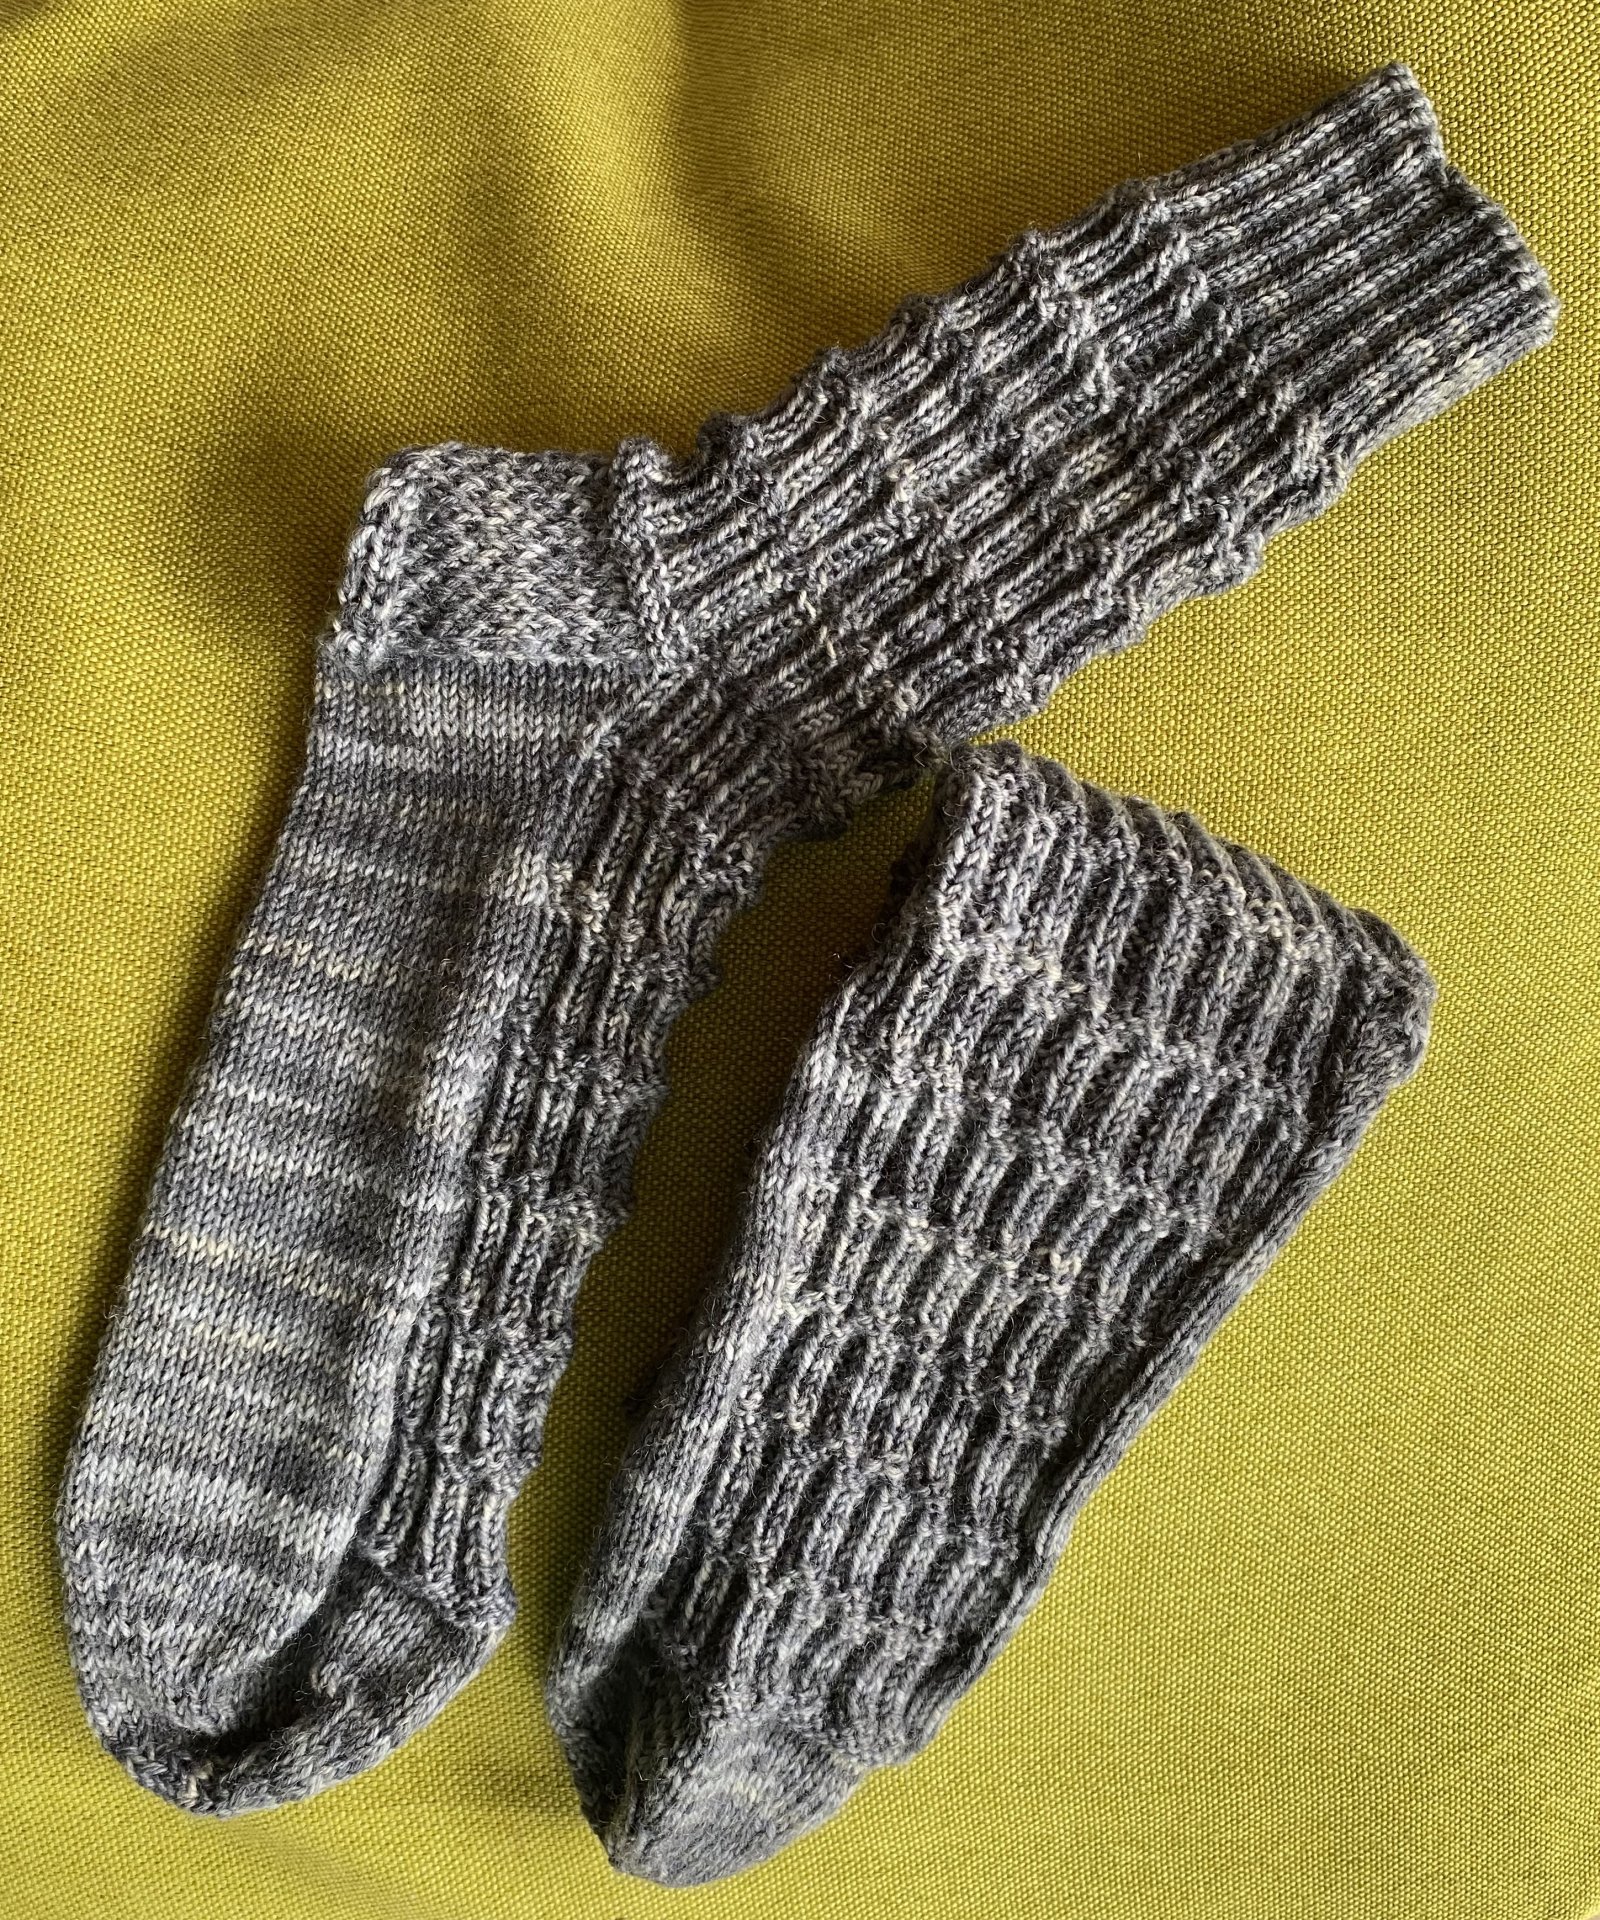 Die schiefe Socke von Pisa